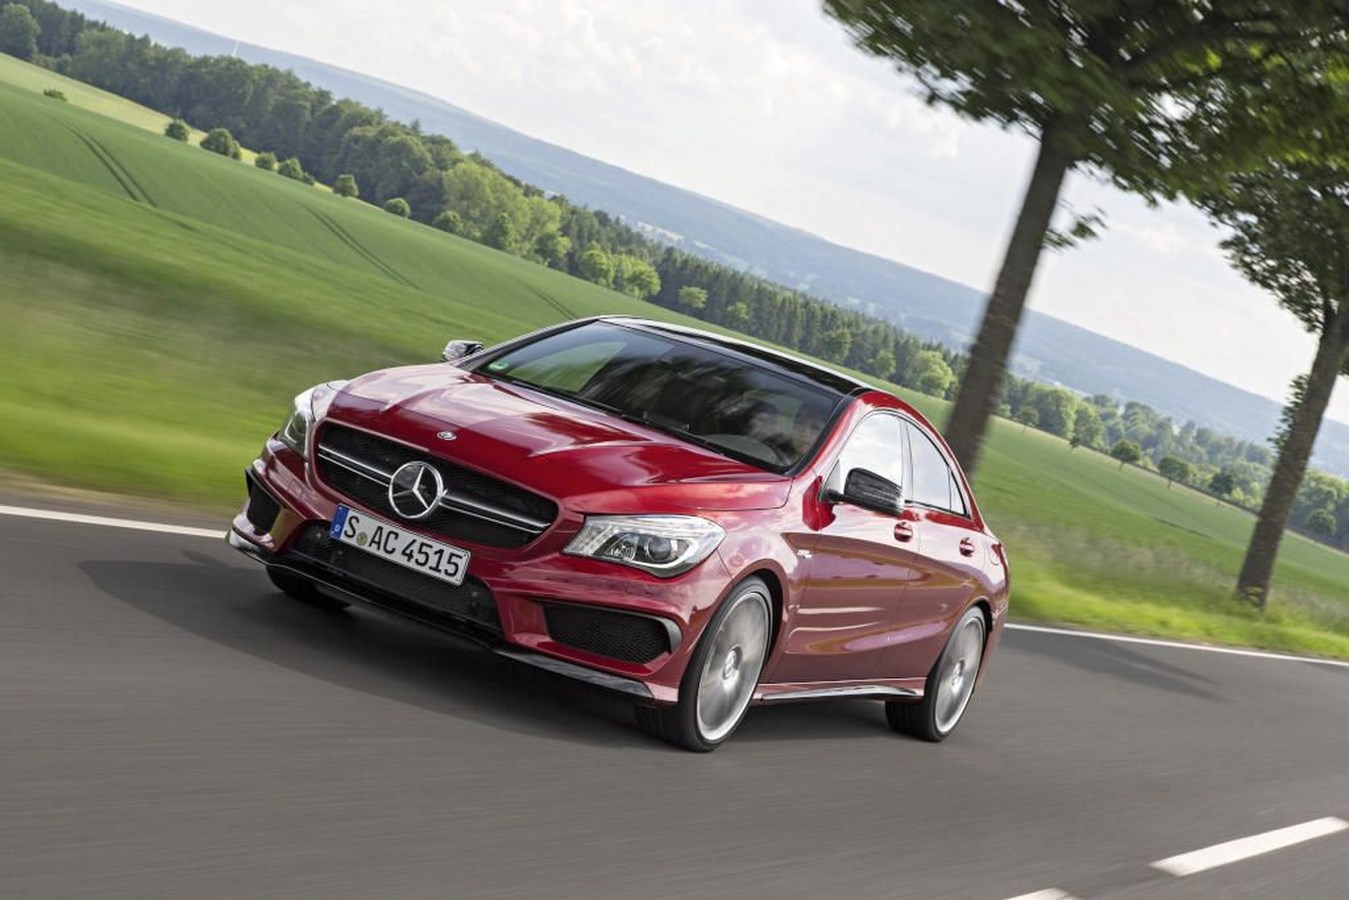 Wyższa moc, lepsza dynamika jazdy - odnowione kompaktowe modele Mercedes-AMG